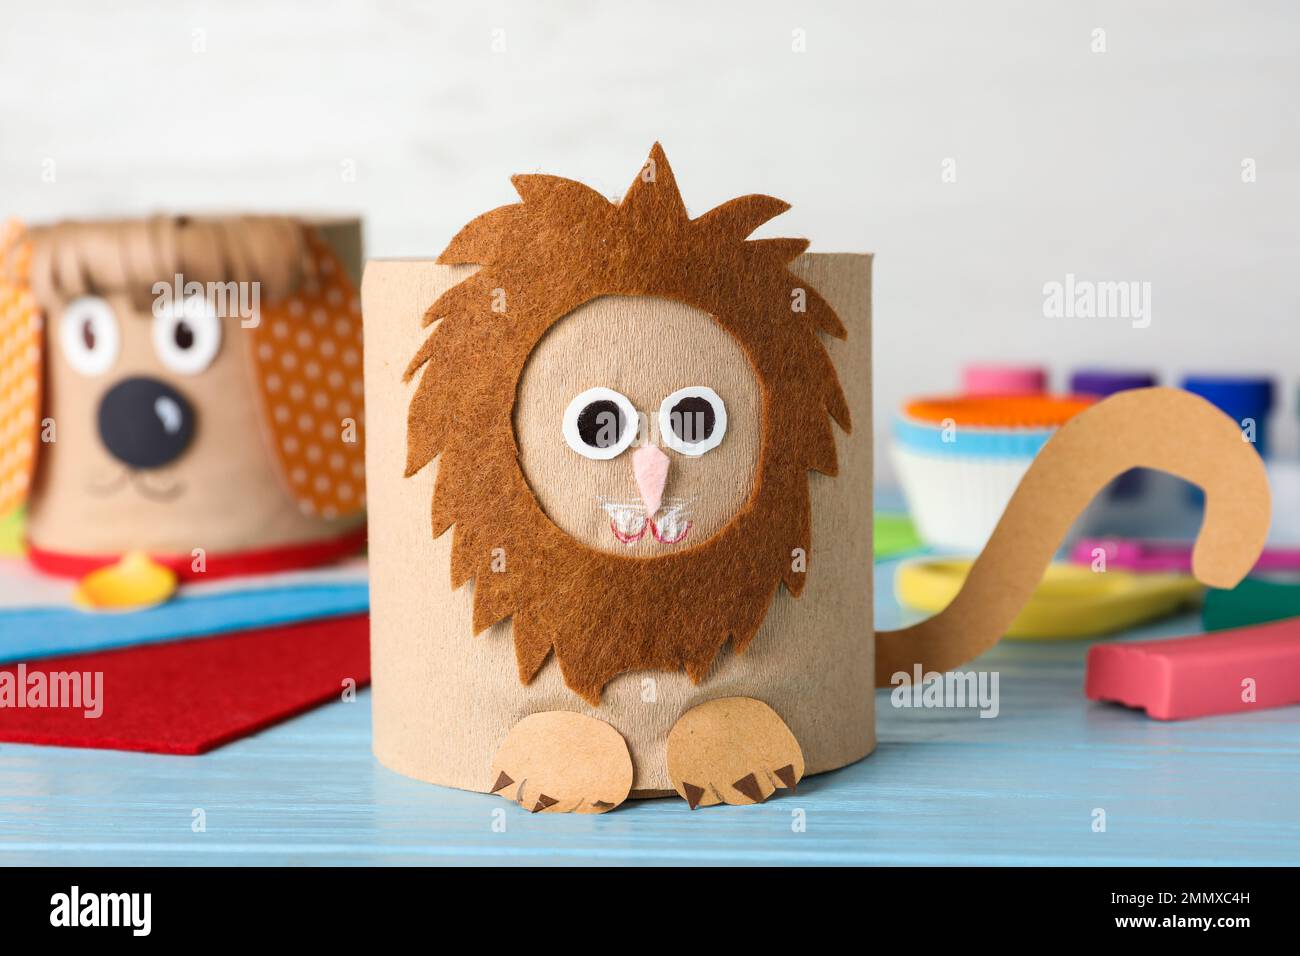 Lion jouet en rouleau de papier toilette sur table en bois bleu Photo Stock  - Alamy